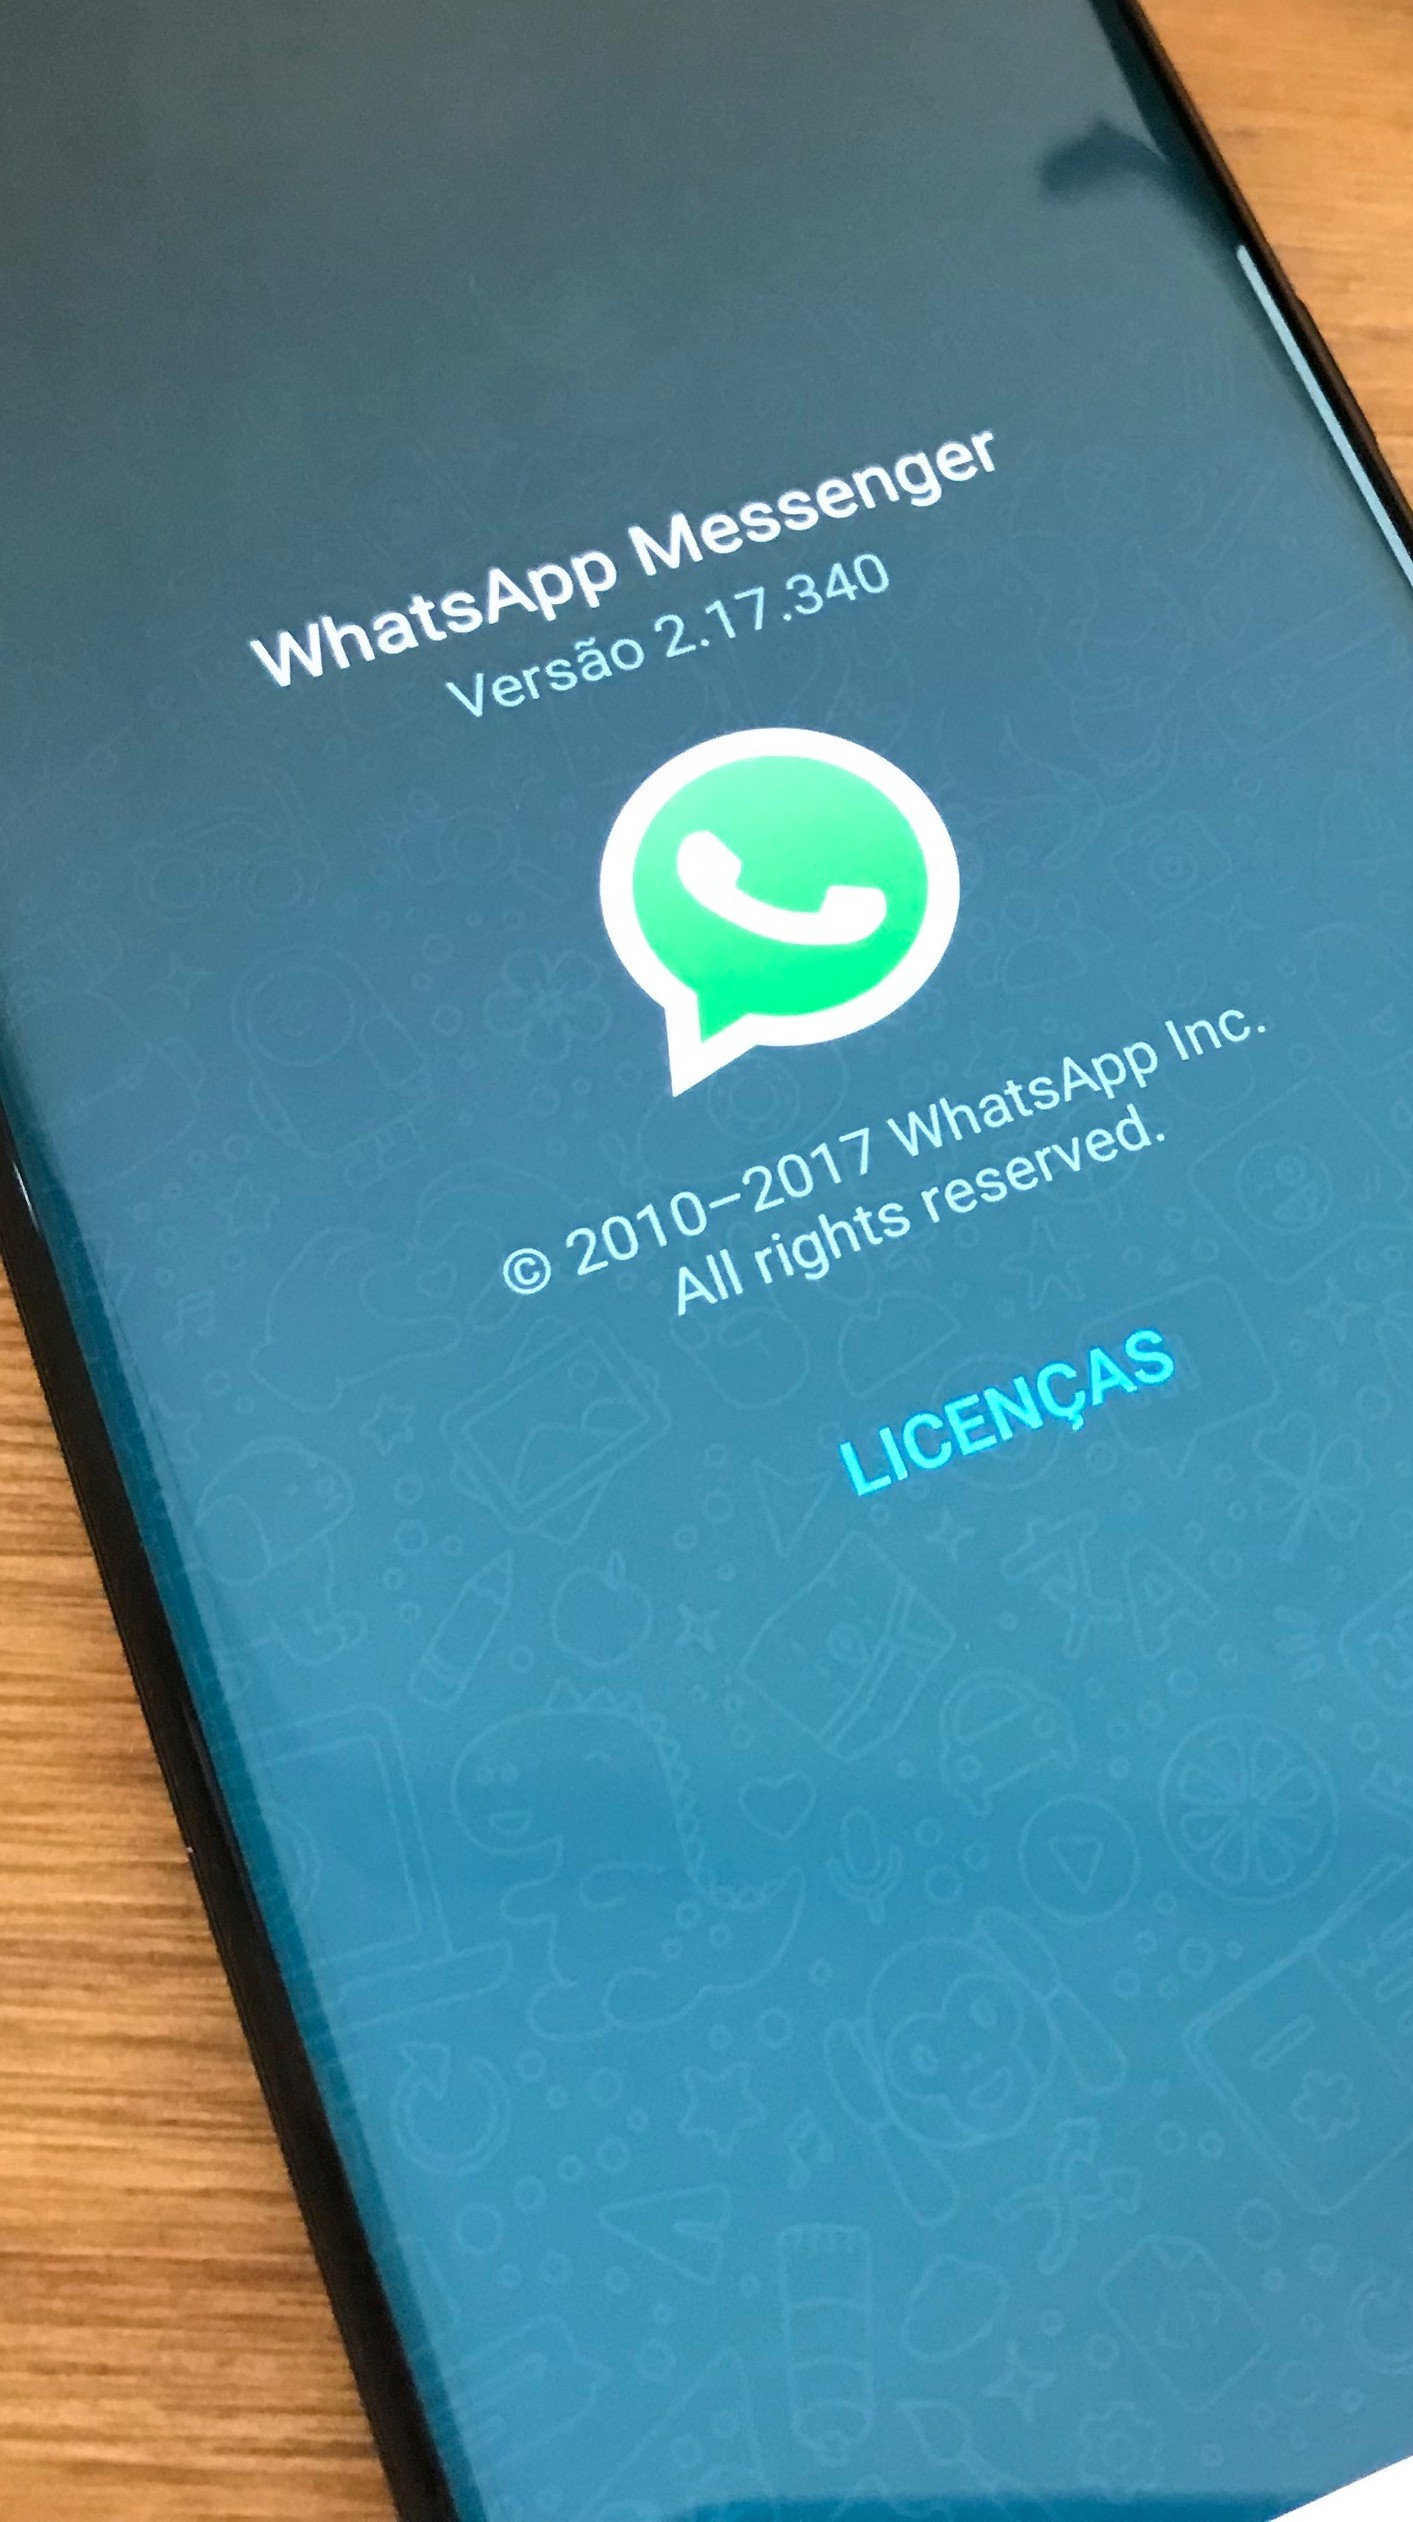 Como recuperar conversas do WhatsApp? Veja tudo que você precisa saber